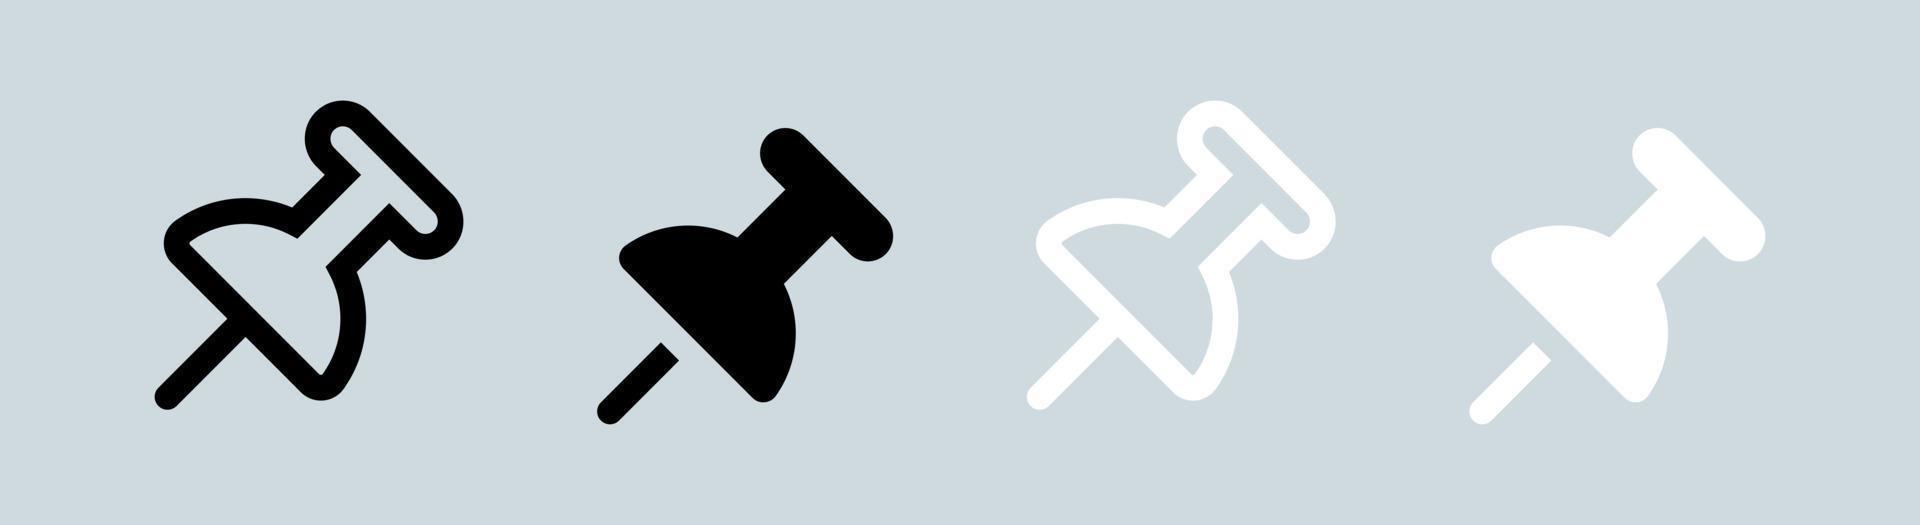 ícone de tachinha nas cores preto e branco. empurre a ilustração em vetor símbolo alfinete.